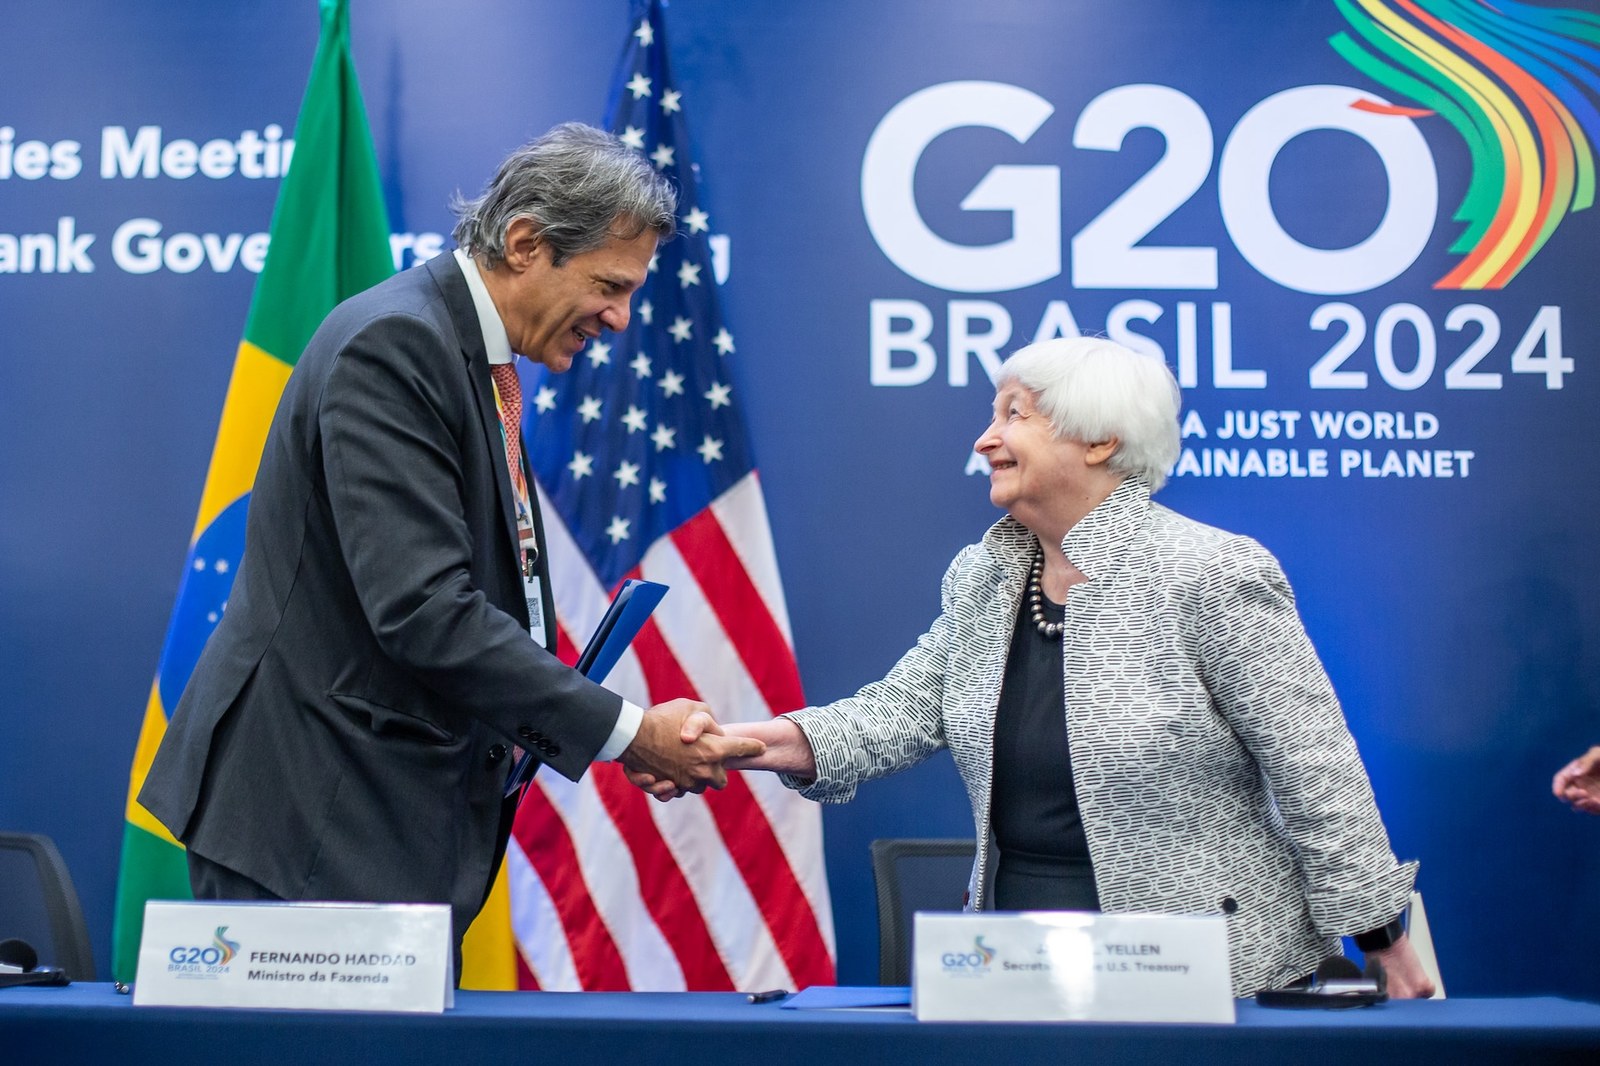 Cooperação histórica entre Brasil e EUA para o clima é anunciada no encontro do G20 no Rio